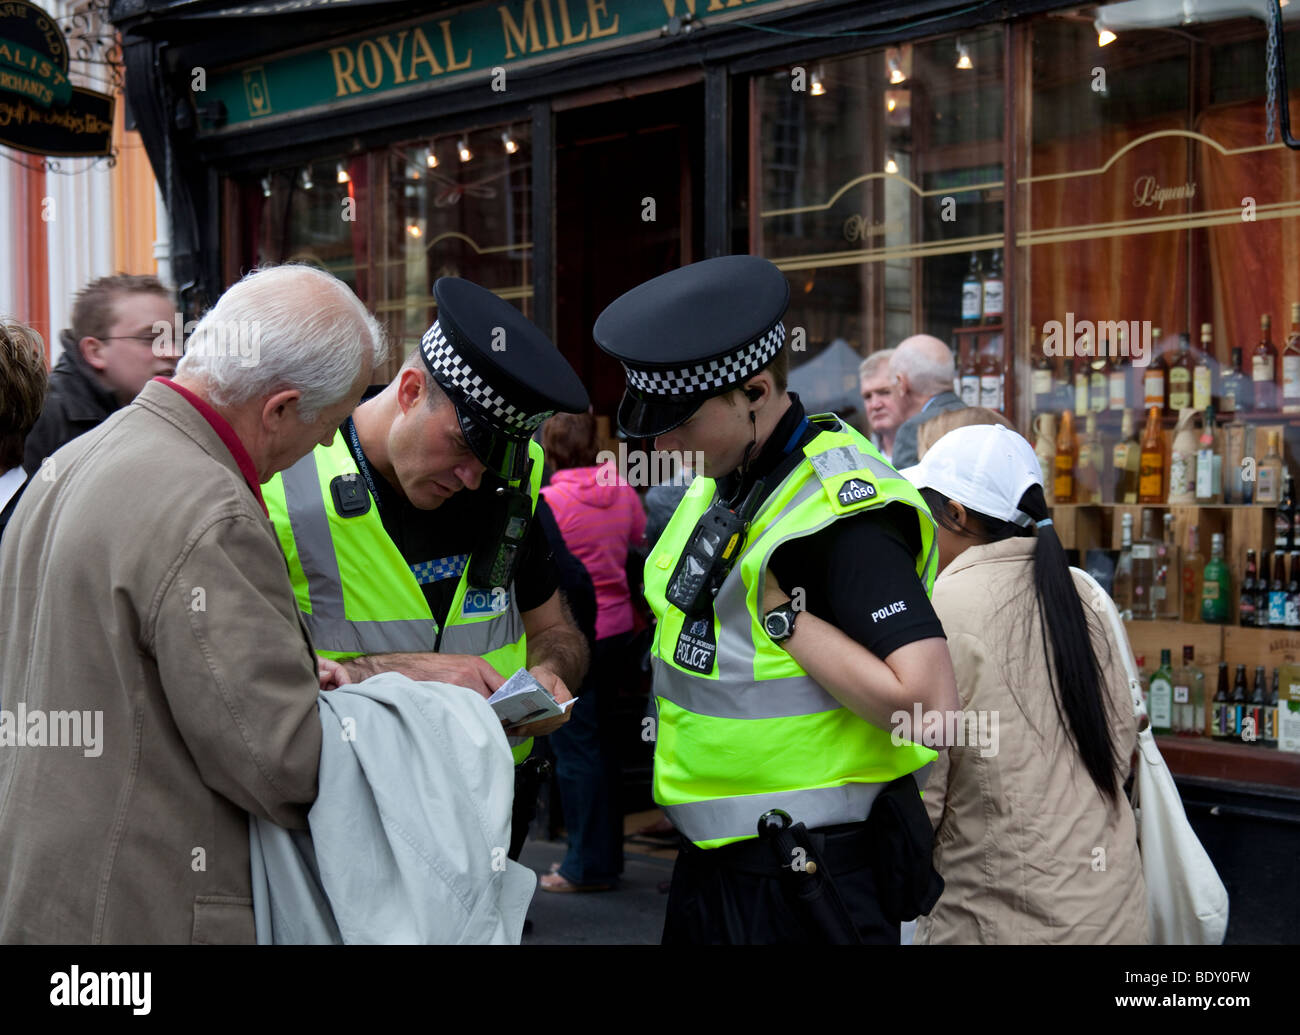 Zwei männliche Polizisten helfen Menschen mit Wegbeschreibungen, Royal Mile Edinburgh Schottland UK Europe Stockfoto